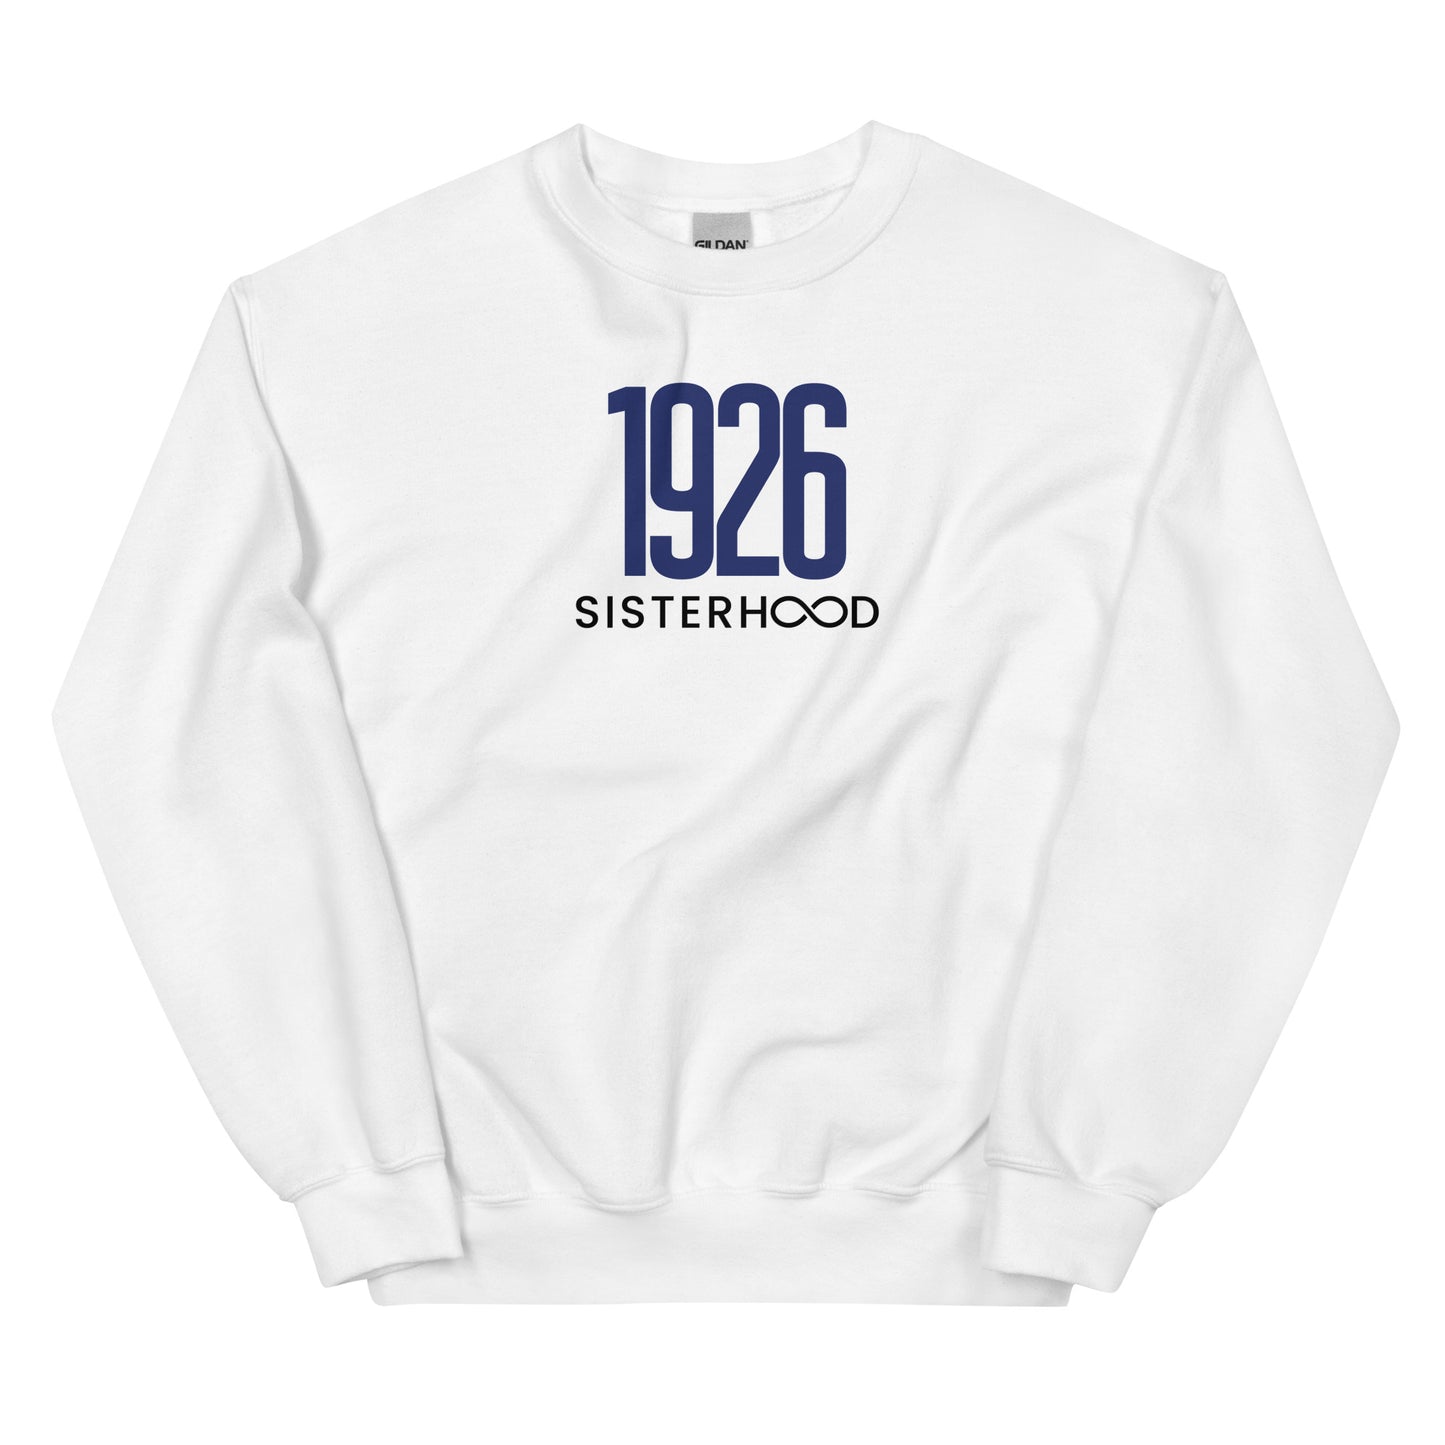 Bennett 1926 Sisterhood - Unisex Fleece Sweatshirt